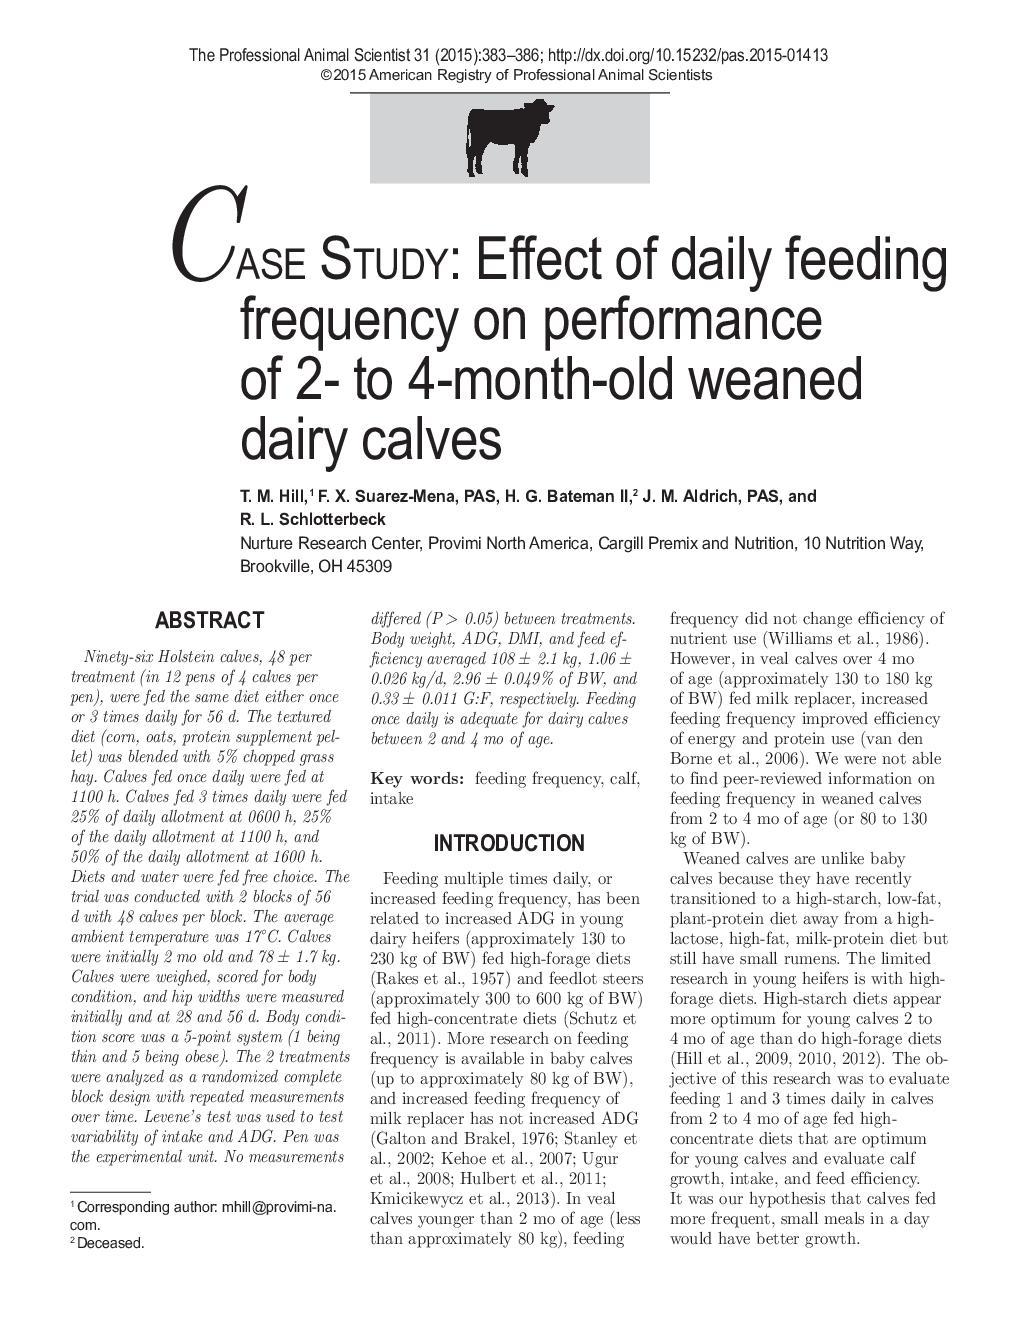 اثر فرکانس تغذیه روزانه بر عملکرد گوساله های شیرخوار 2 تا 4 ماهه 